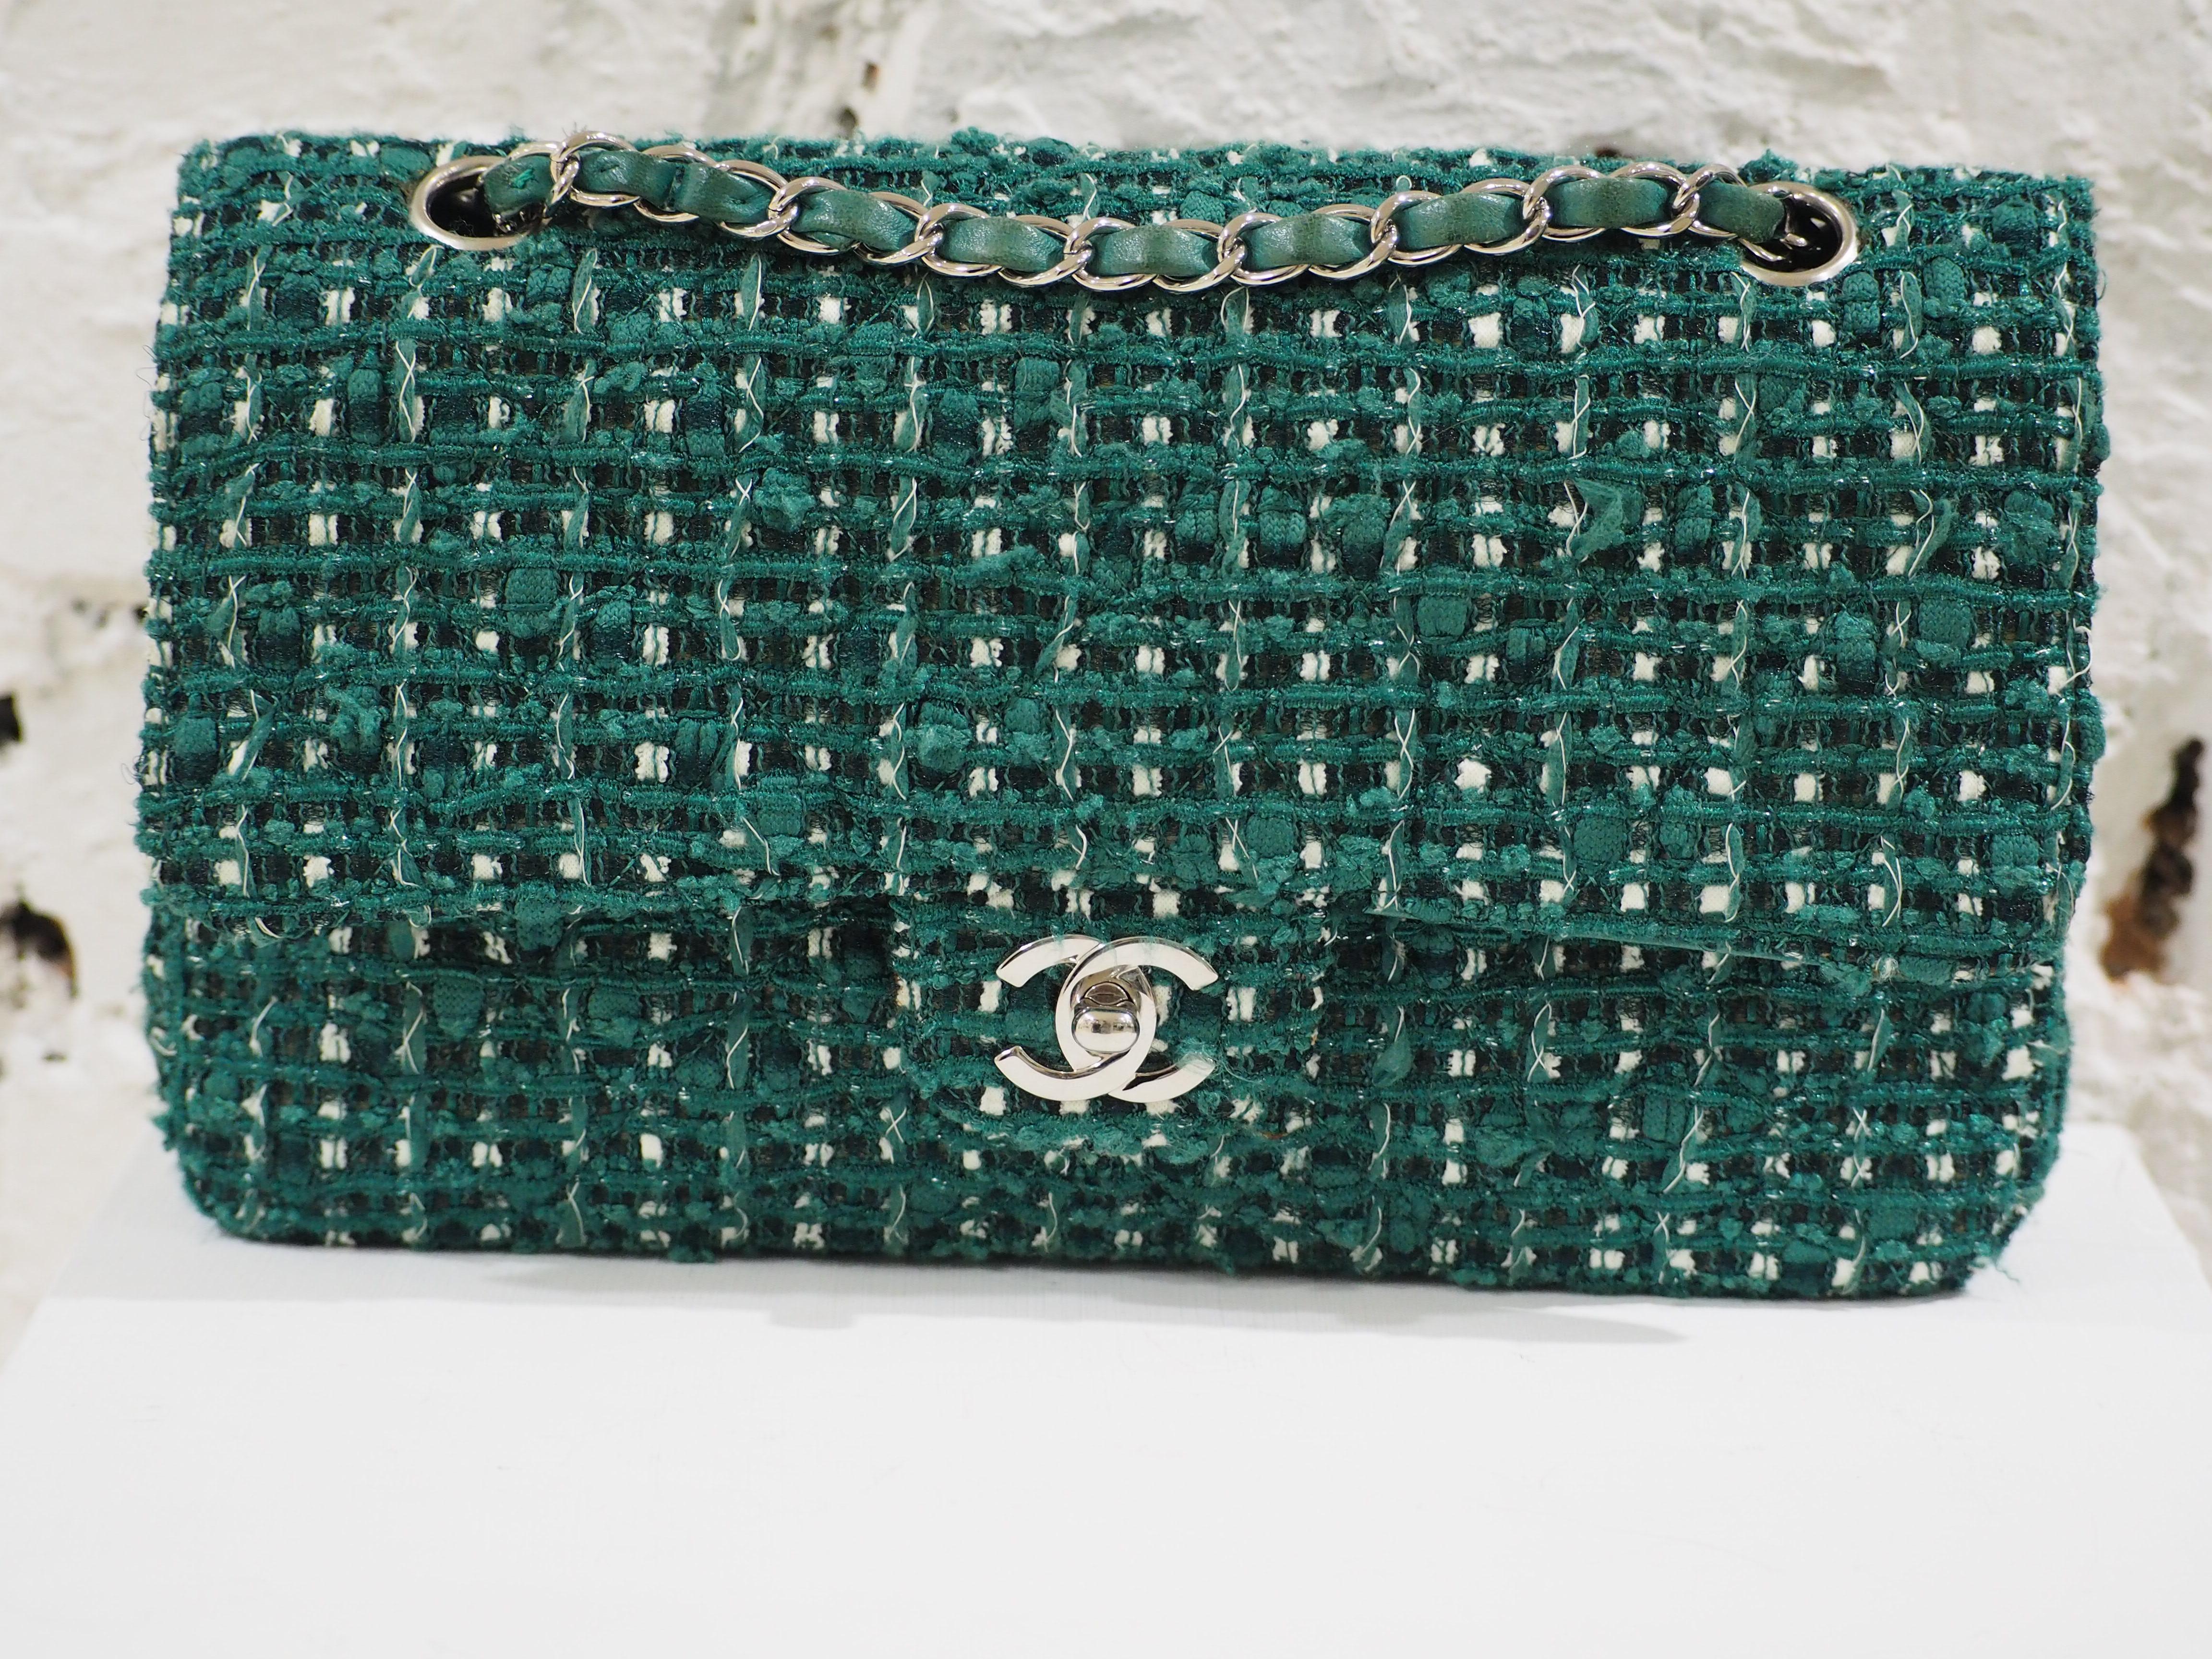 Chanel 2.55 green tweed shoulder bag 7